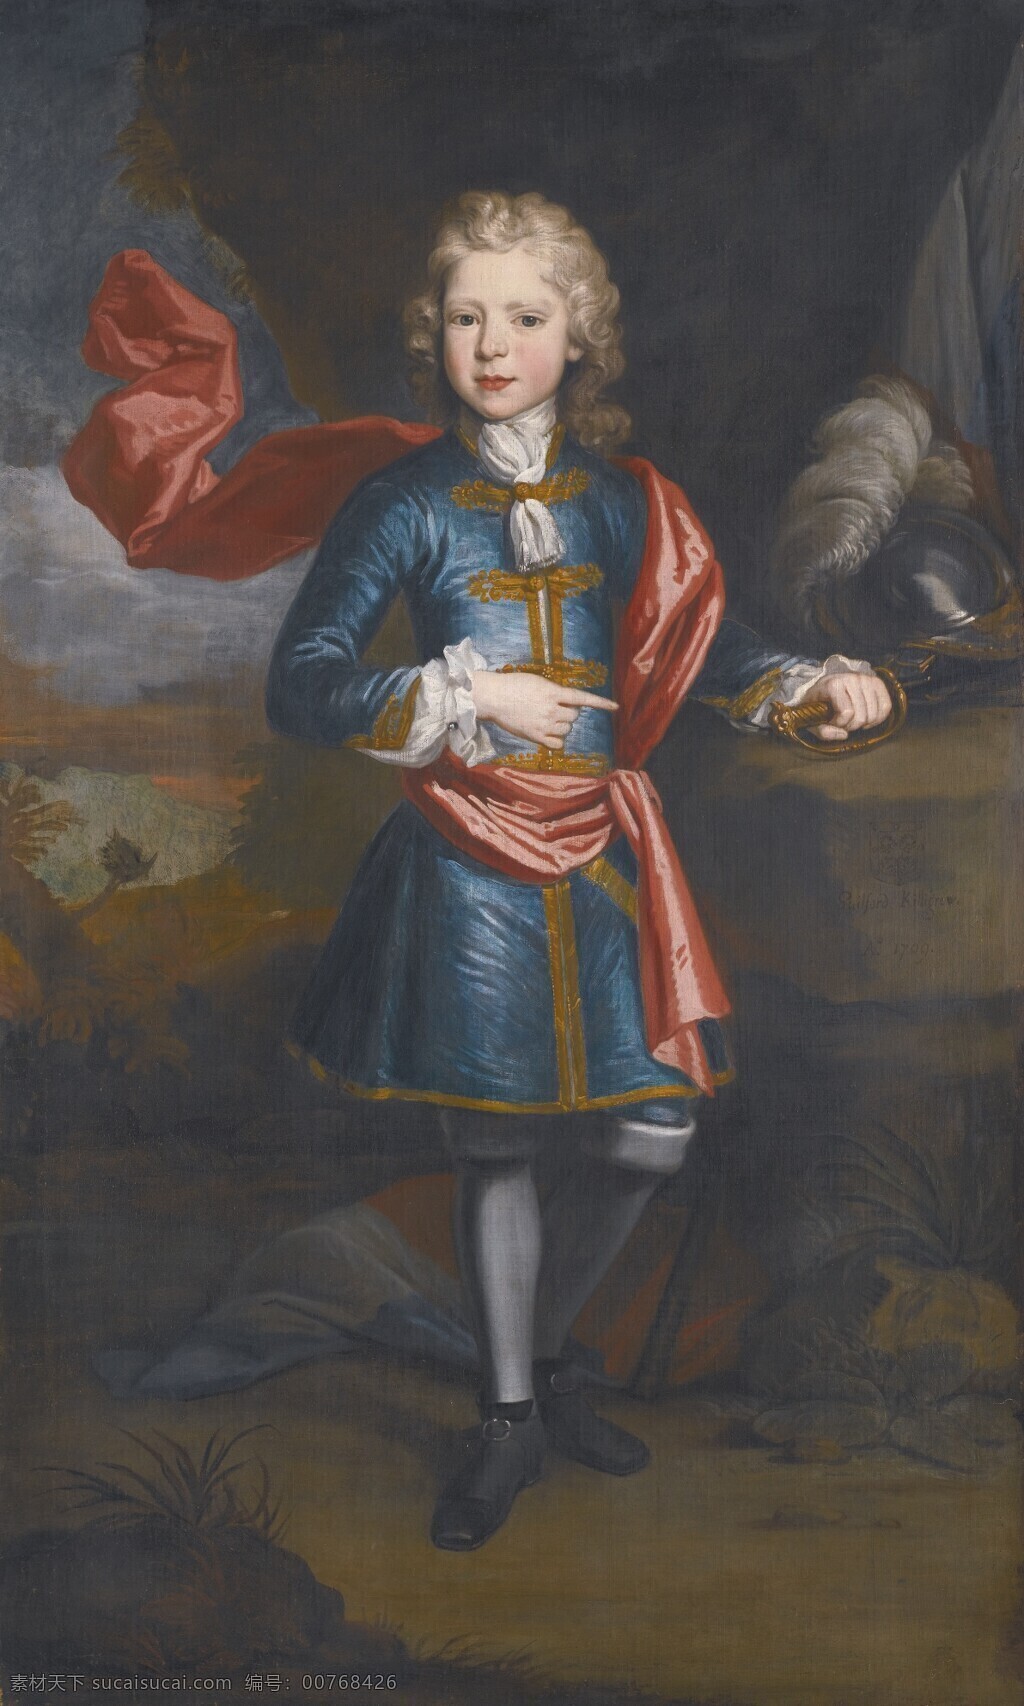 贵族男孩 贵族之家 全身画像 盔甲 18世纪 古典油画 油画 绘画书法 文化艺术